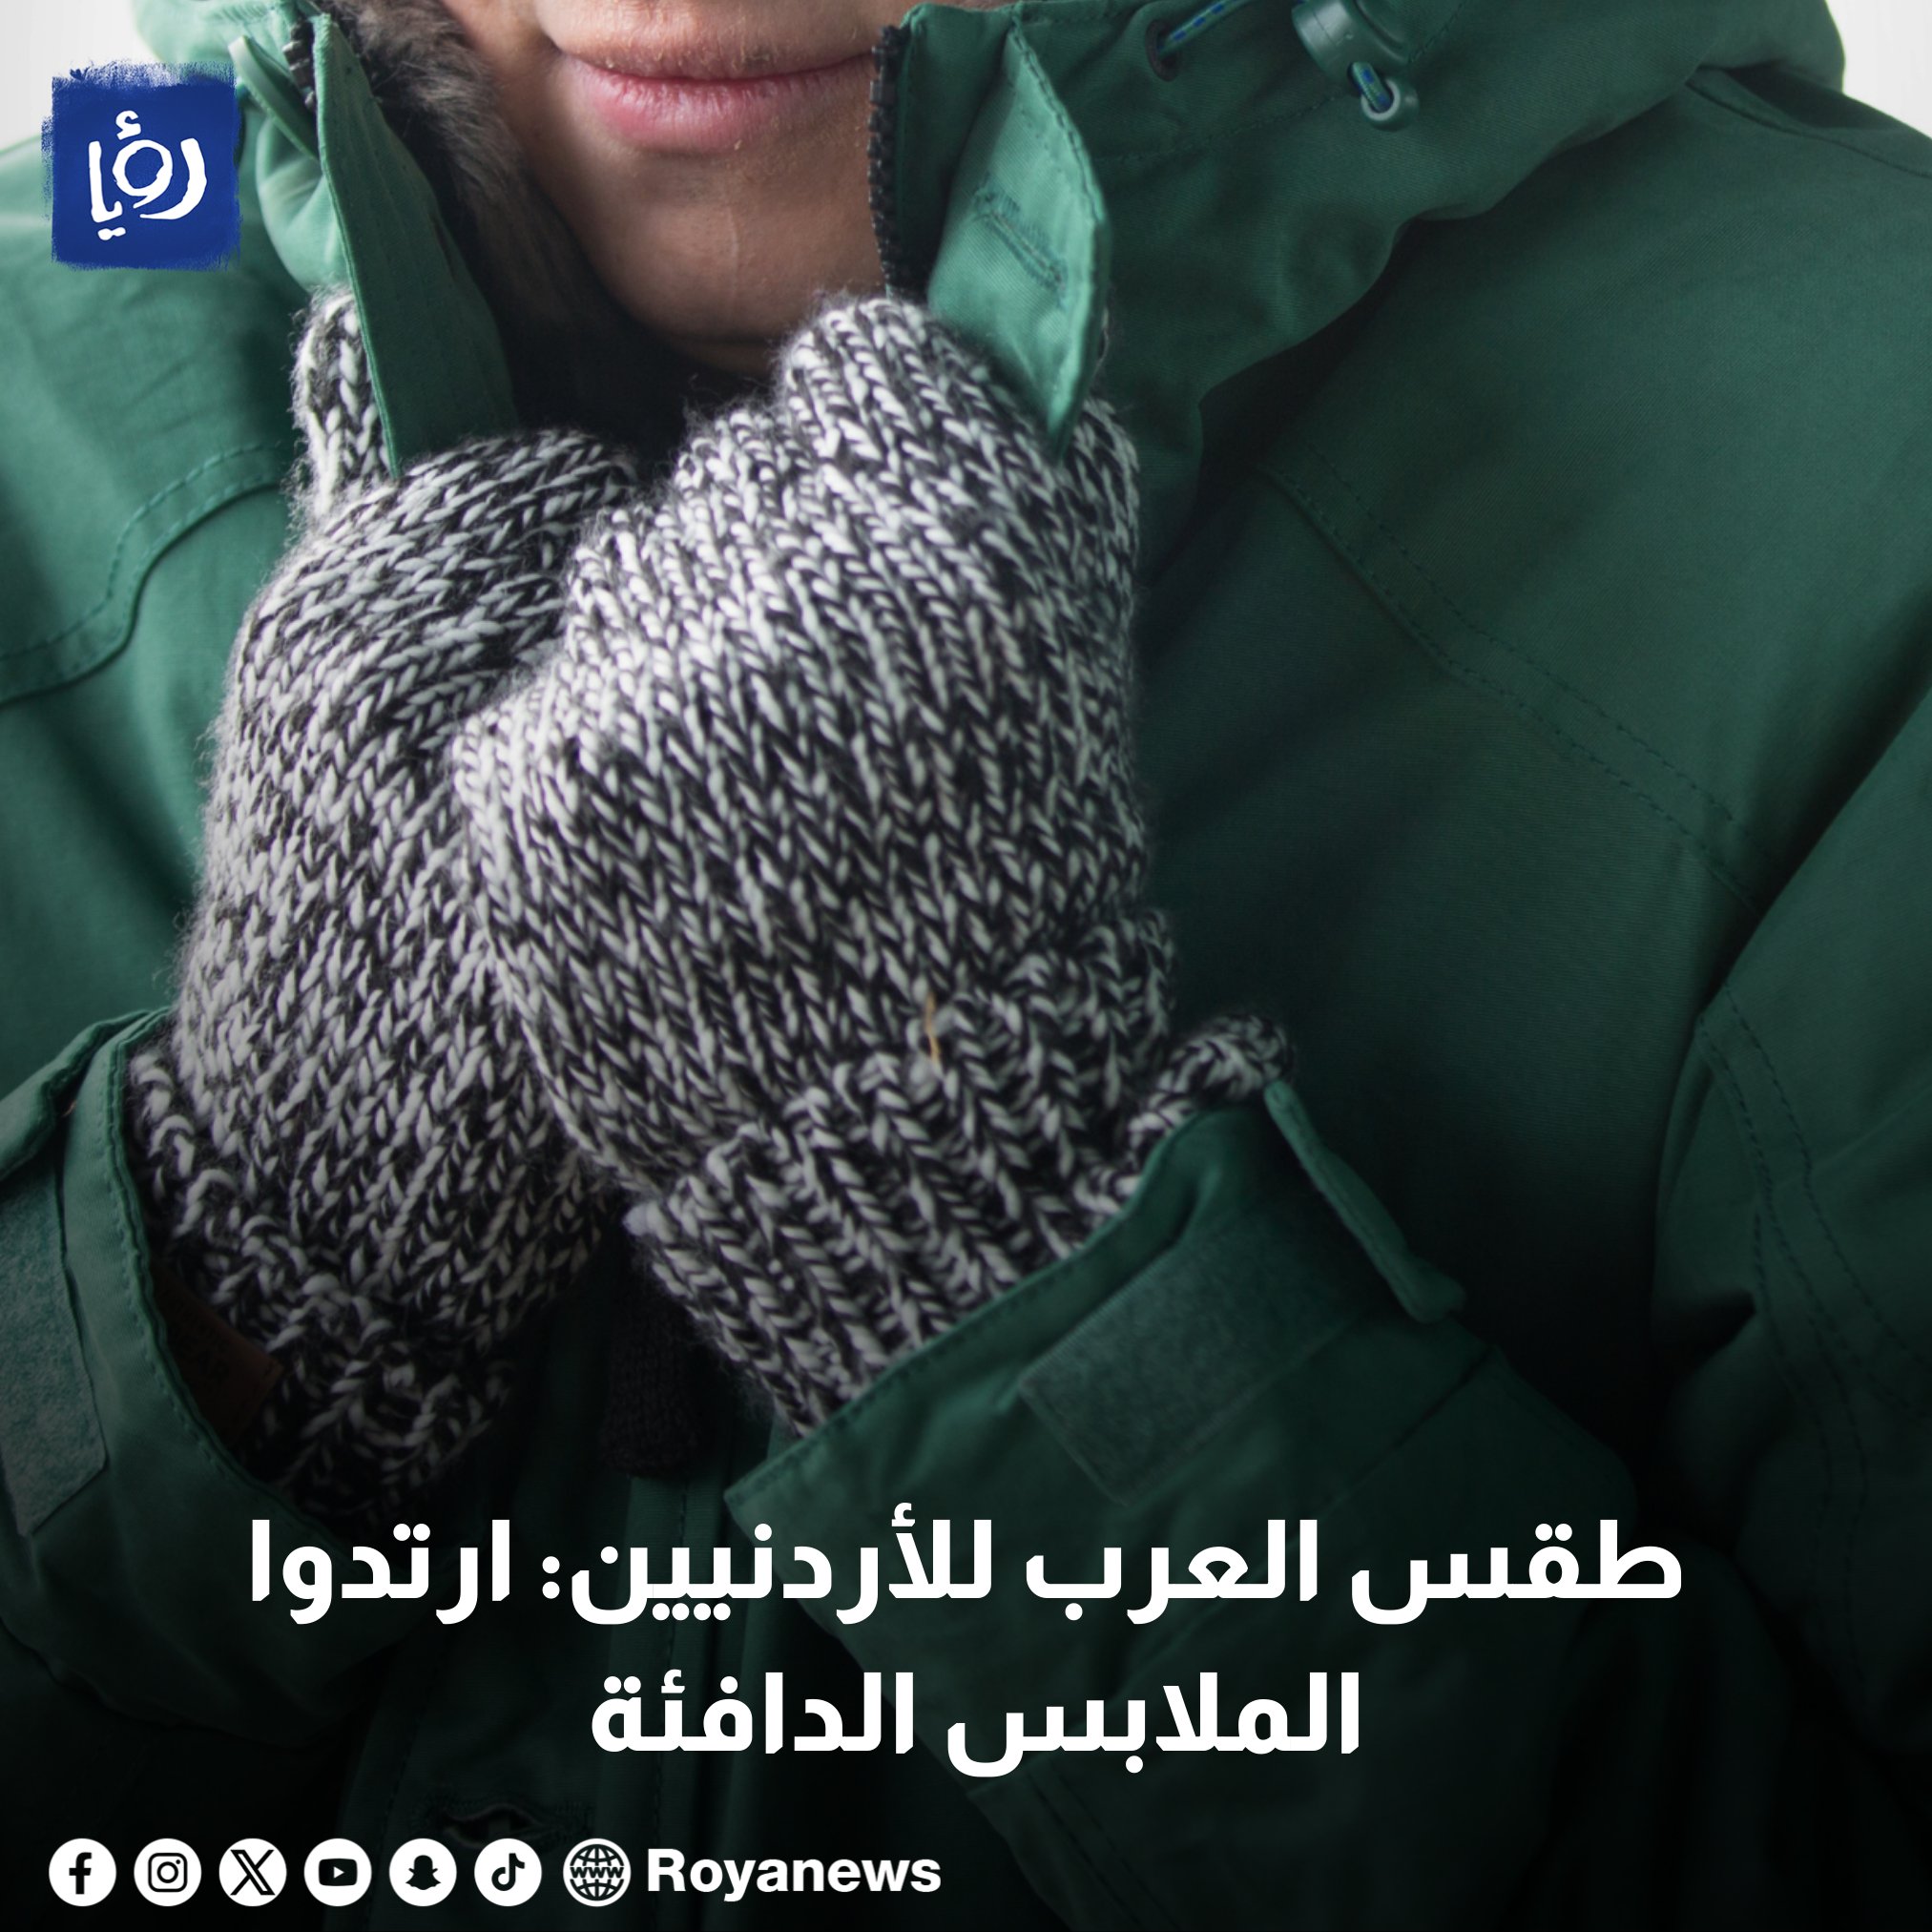 طقس العرب للأردنيين: ارتدوا الملابس الدافئة في هذا الموعد #عاجل 